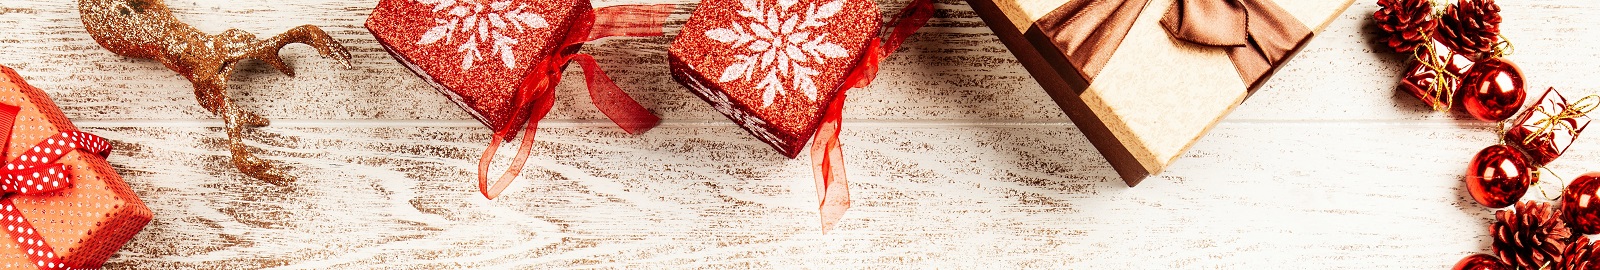 Tipy na vánoční dárky, které zaručeně udělají radost